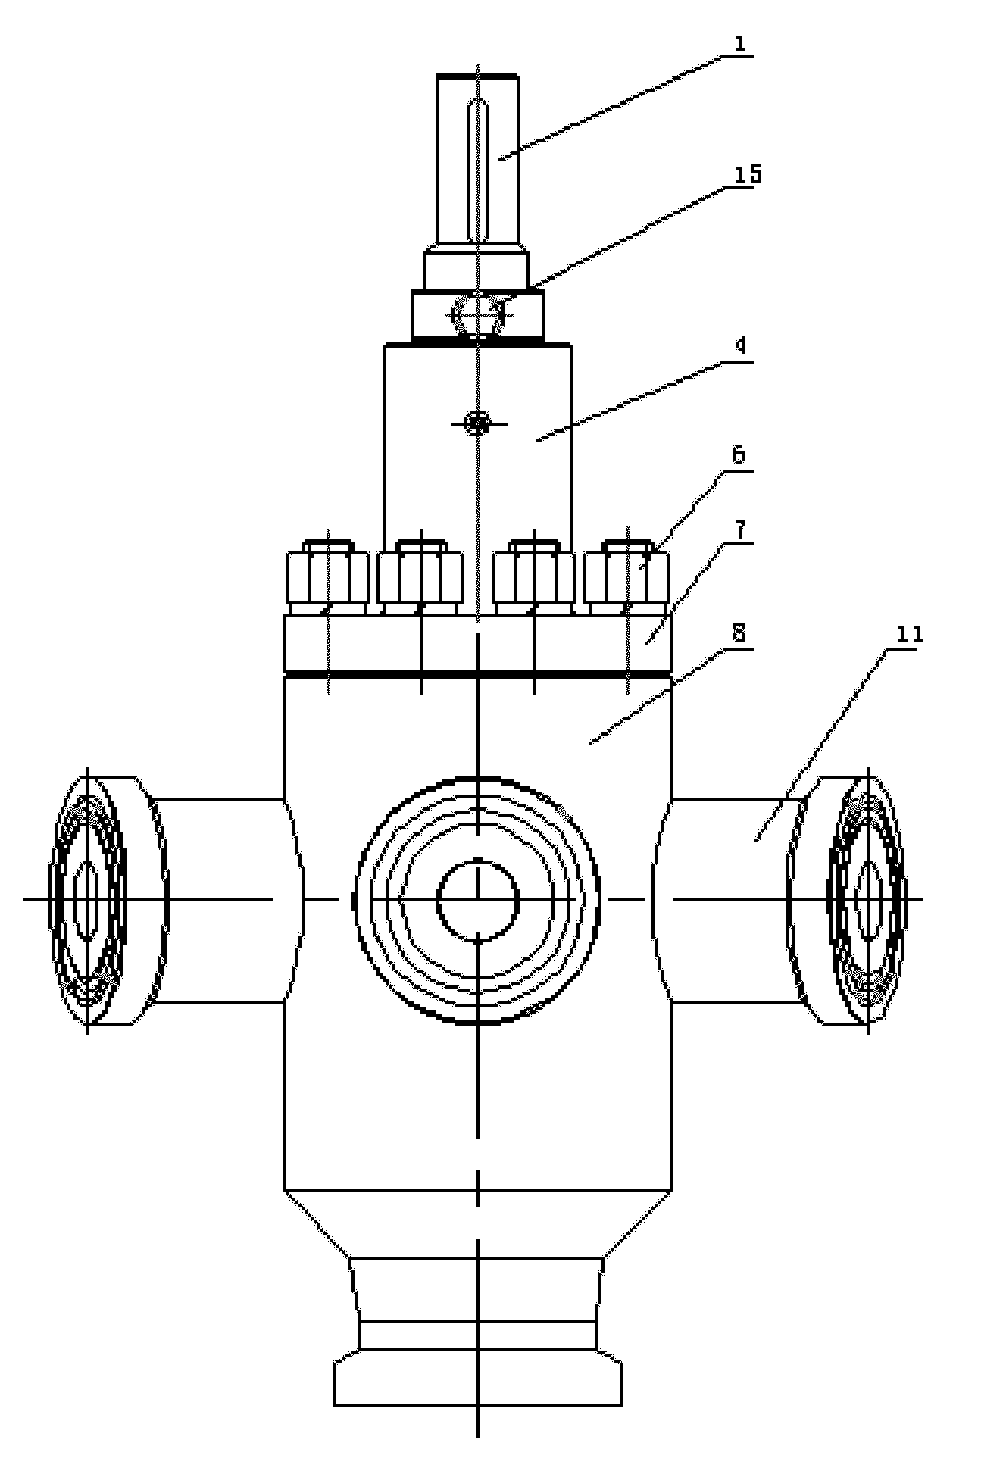 Adjustable high-pressure multiport distributing valve